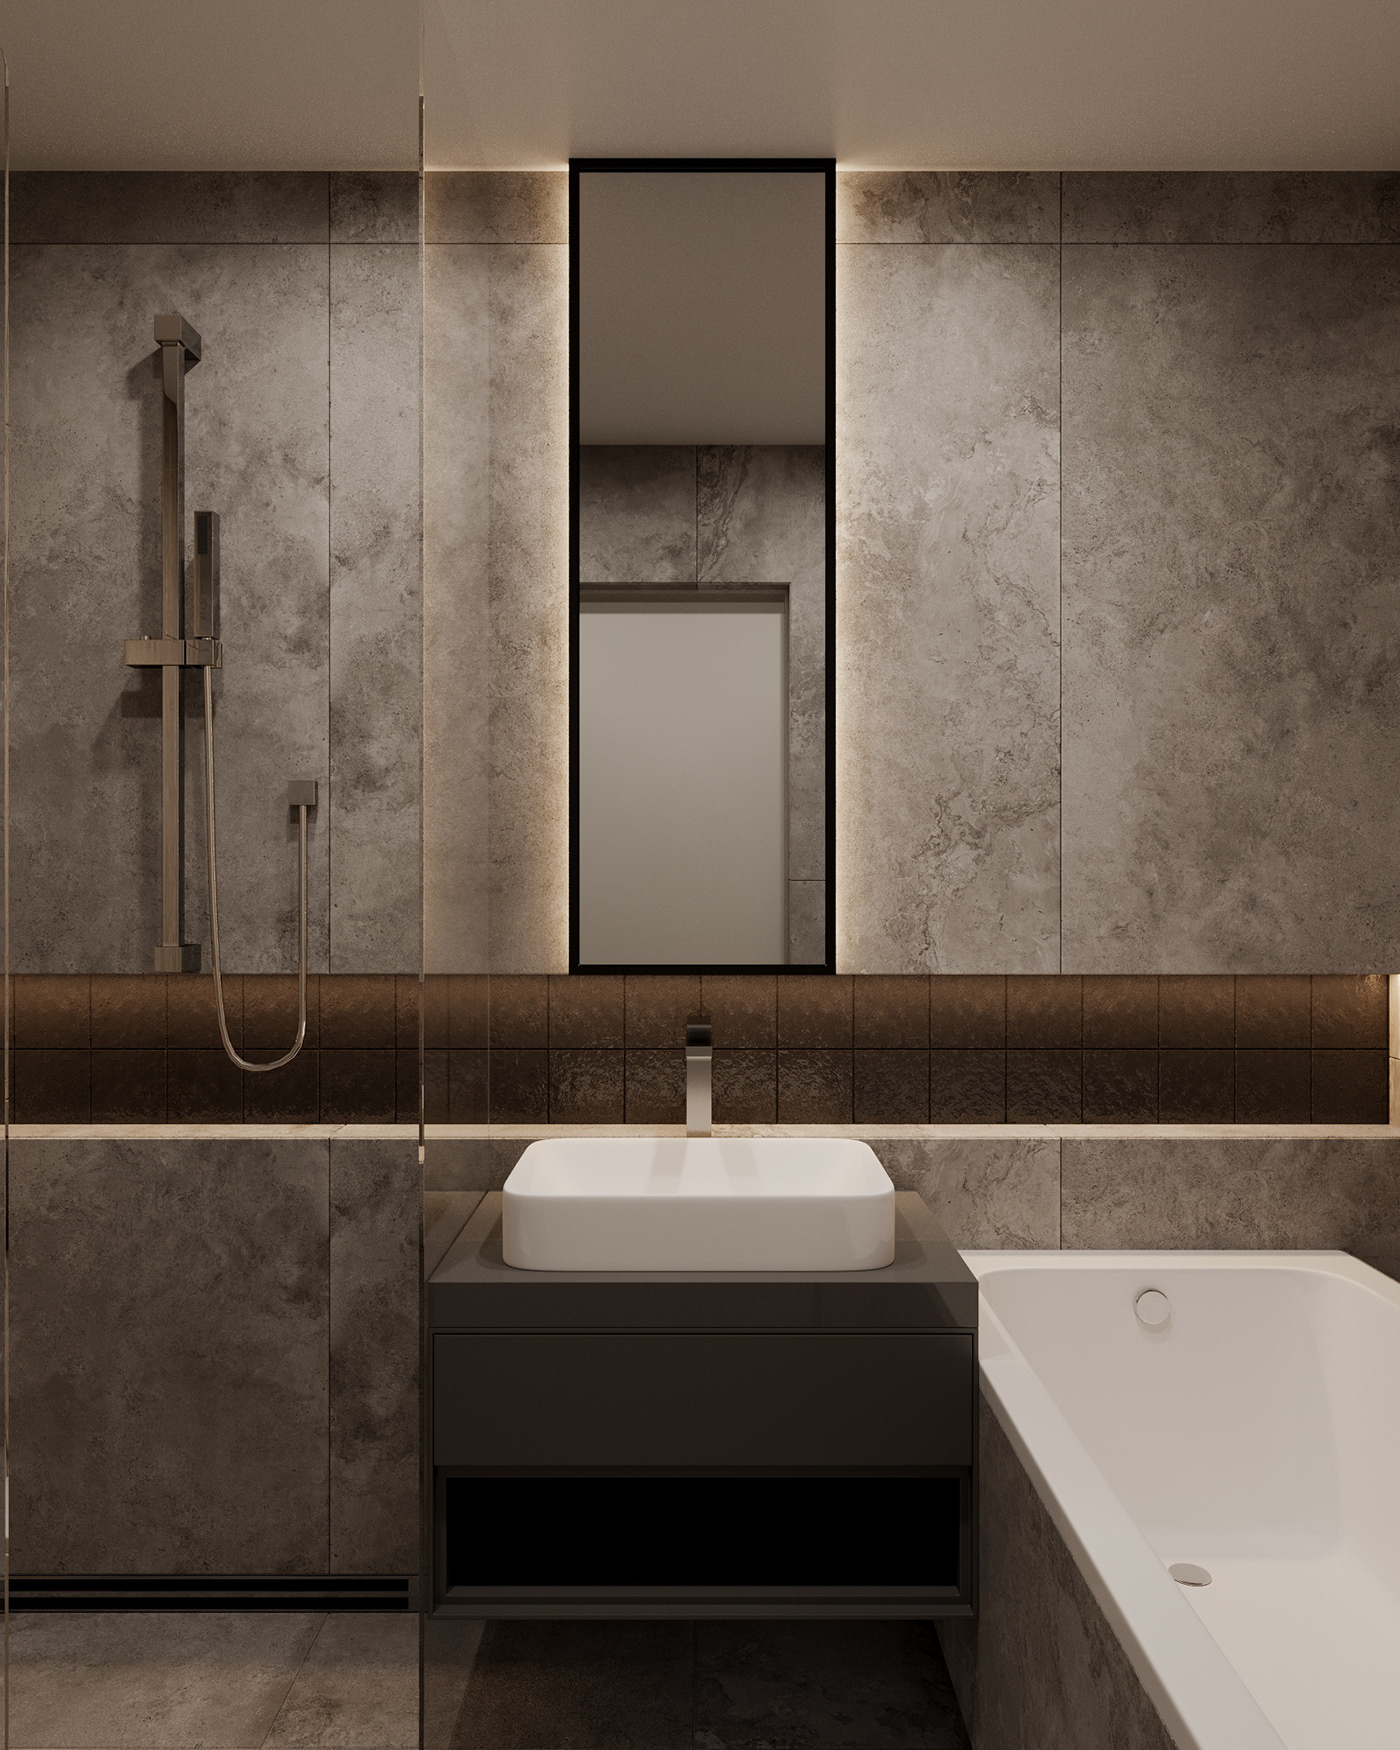 bathroom bathroom design bathroomdesign bathroom interior room room design Interior wood tiles tile